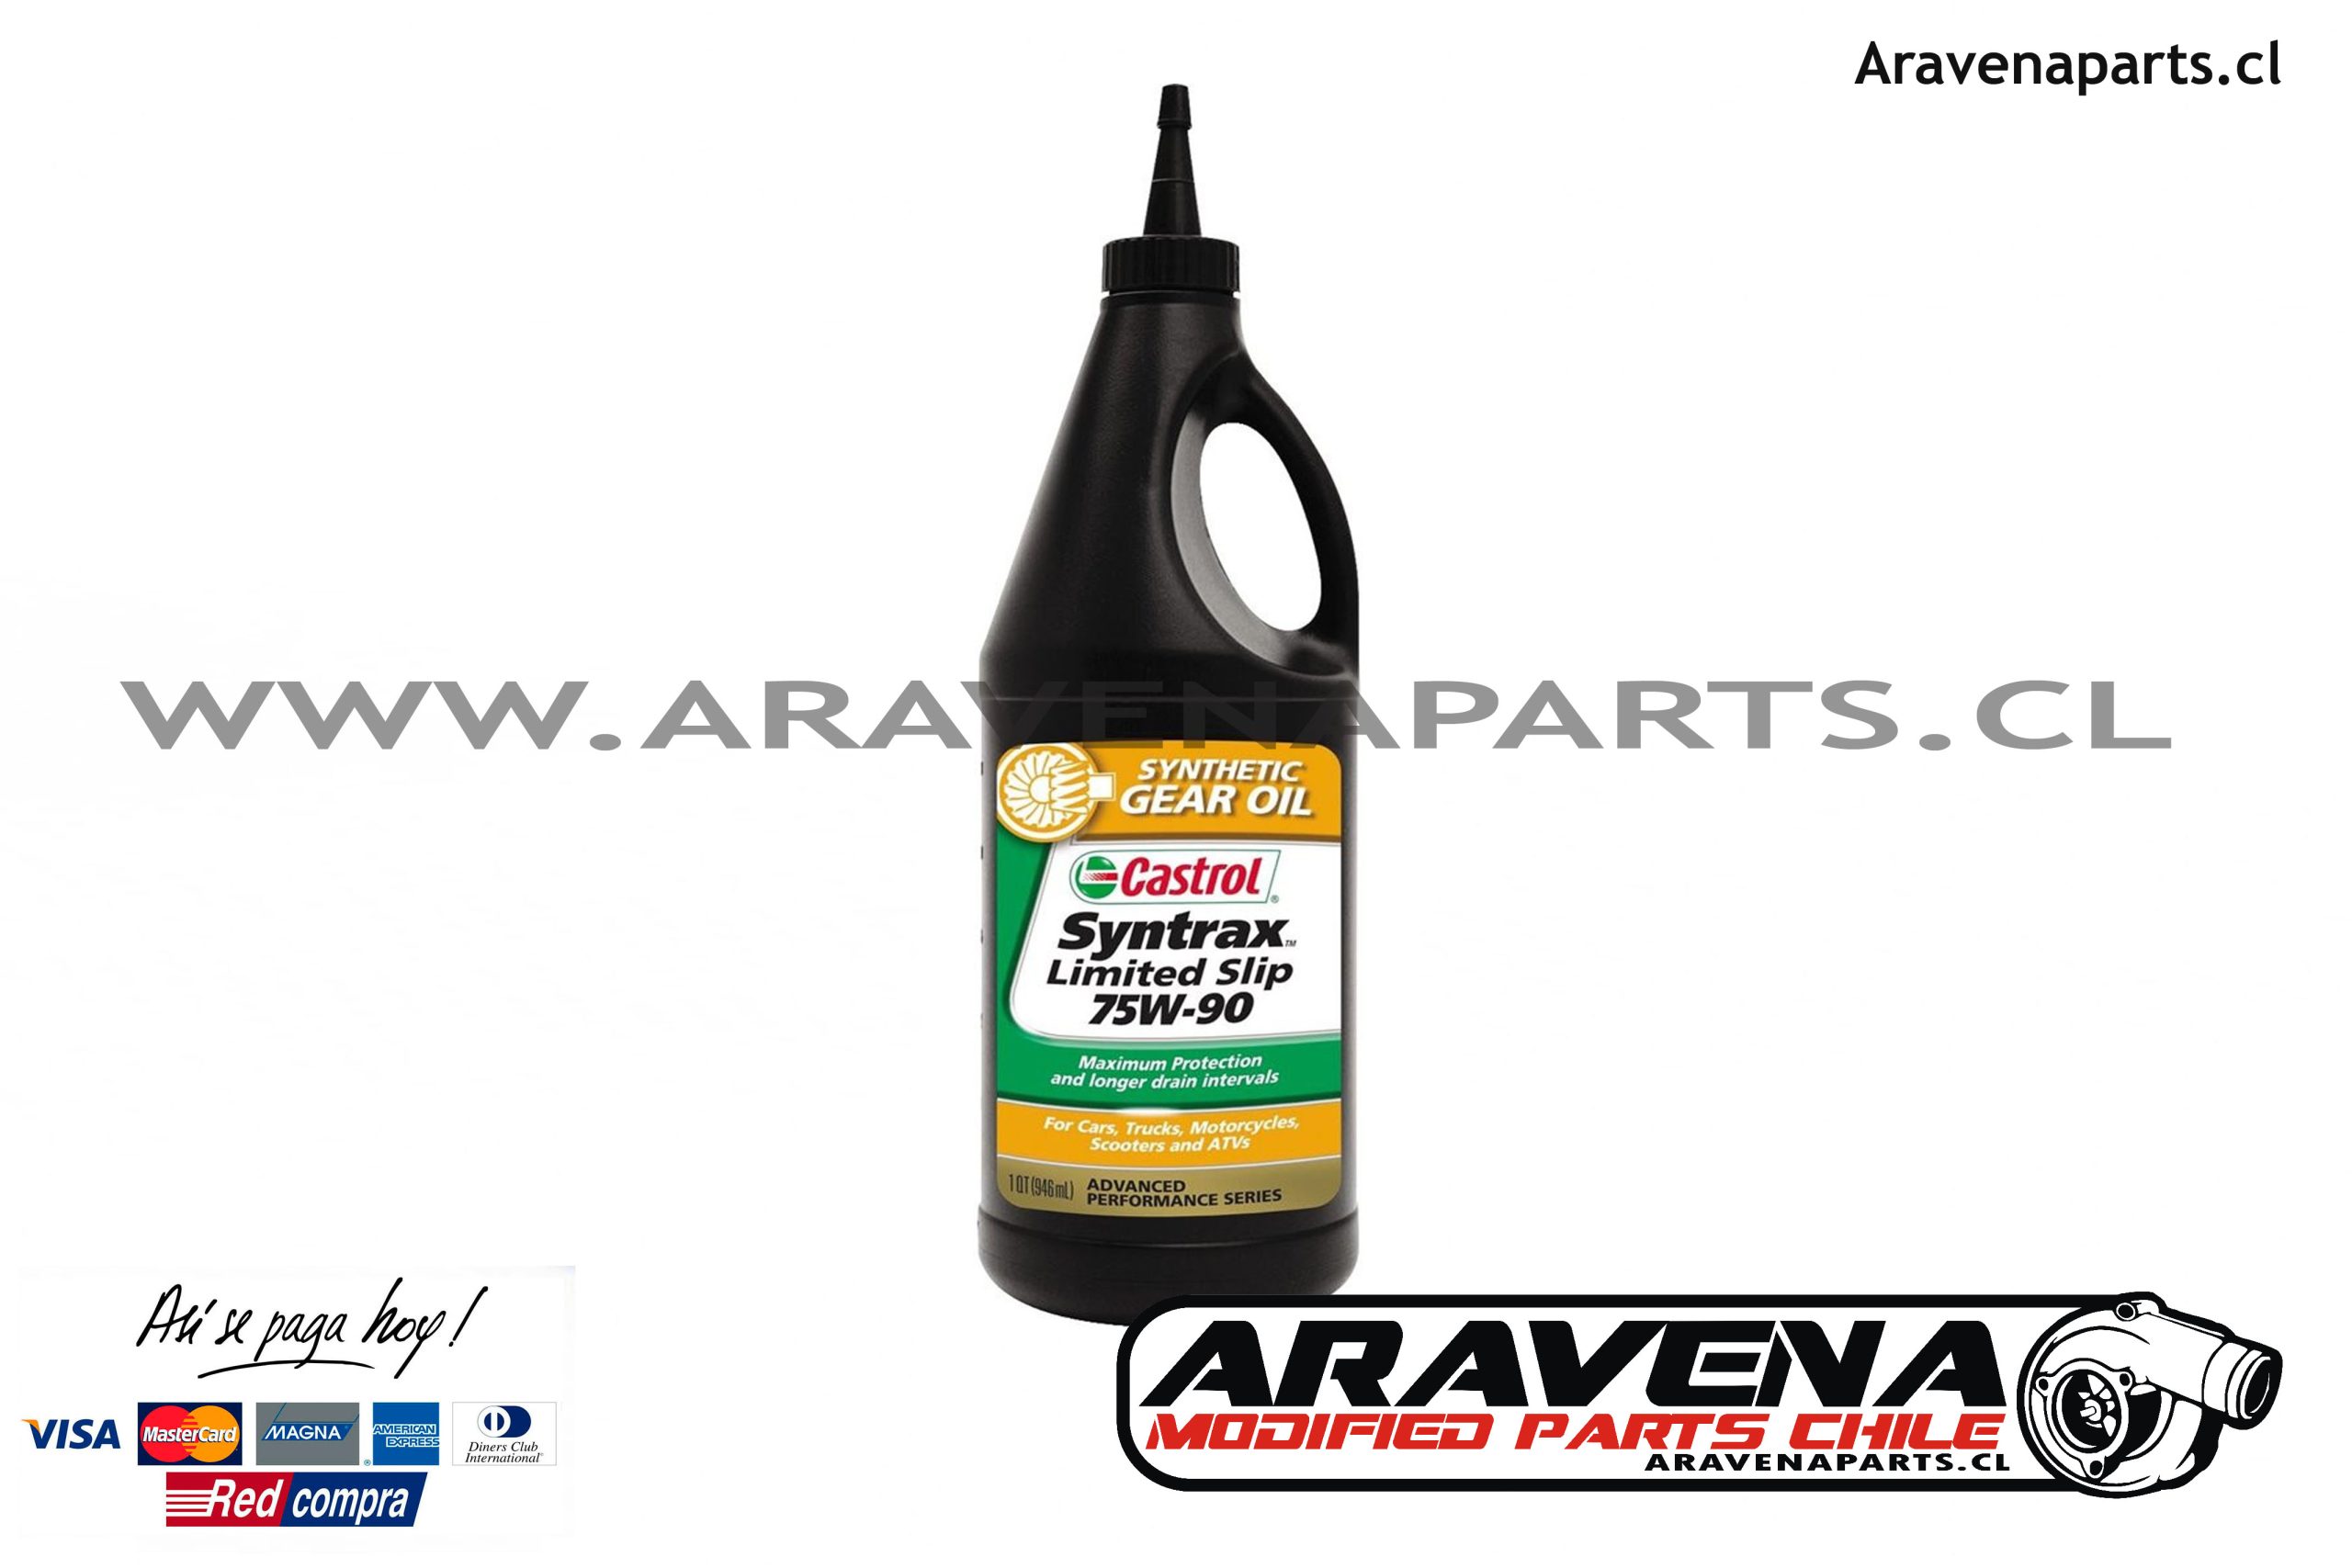 Castrol Limited SLIP 75W90 LS GL-5 946ml - Aravena Parts